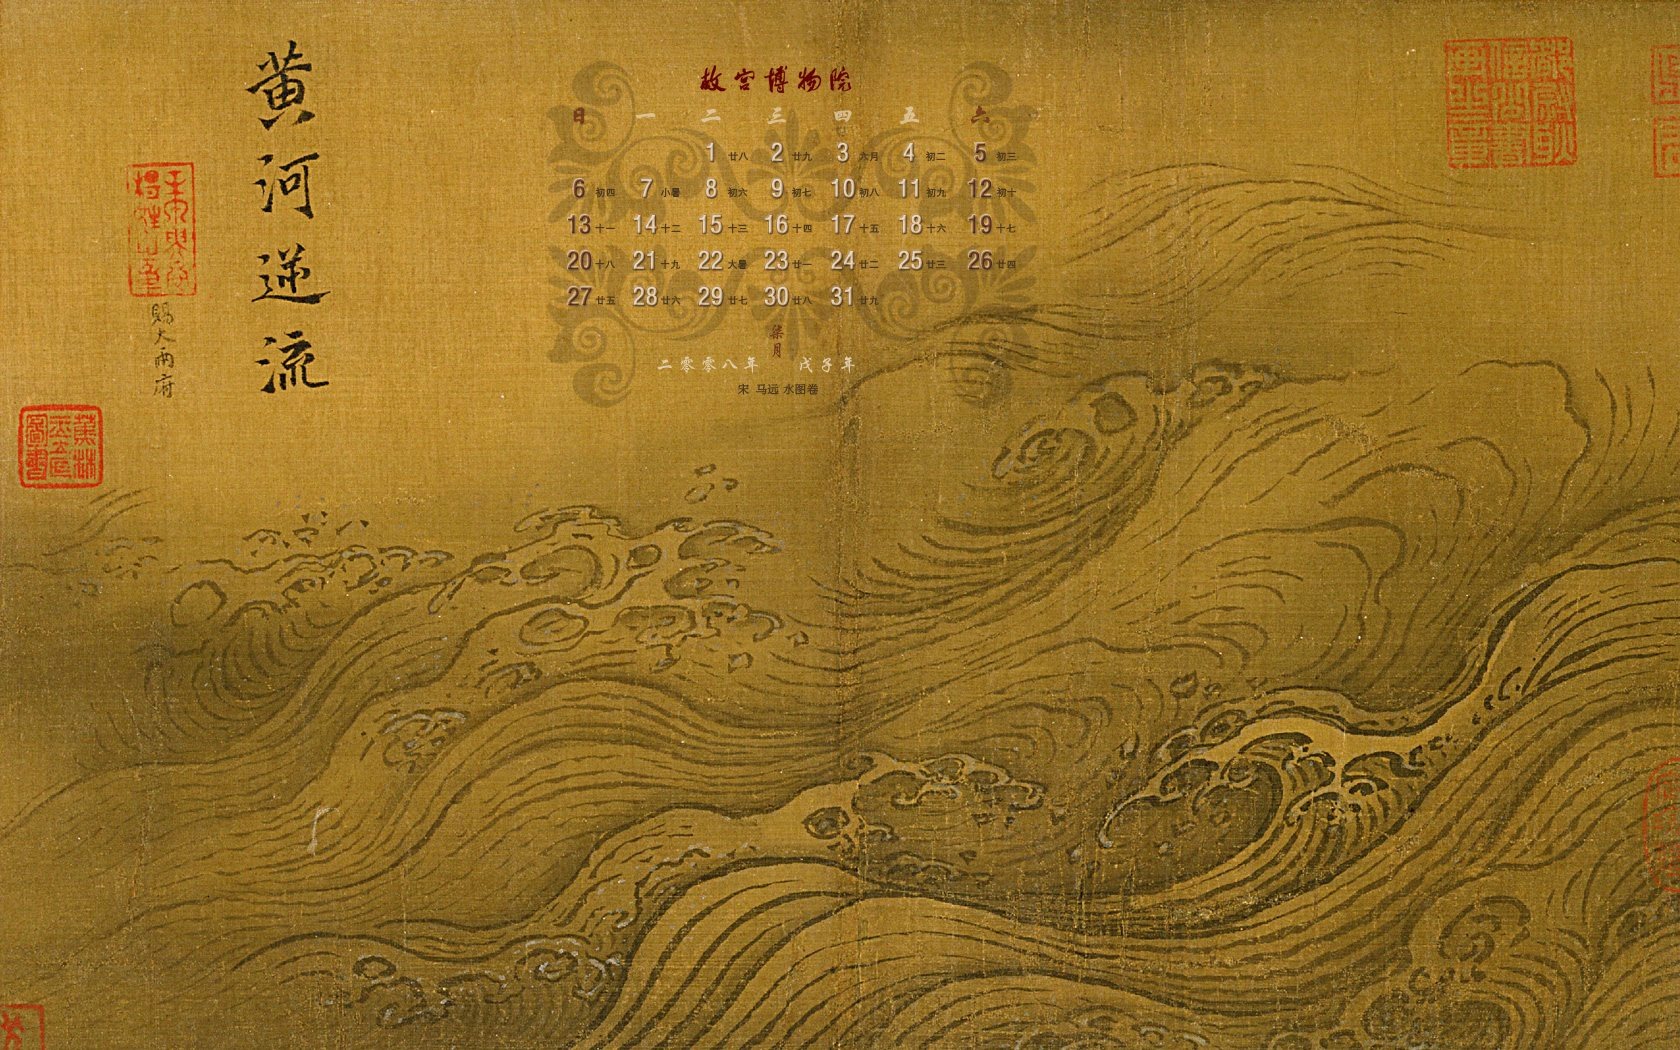 北京故宫博物院 文物展壁纸(二)7 - 1680x1050